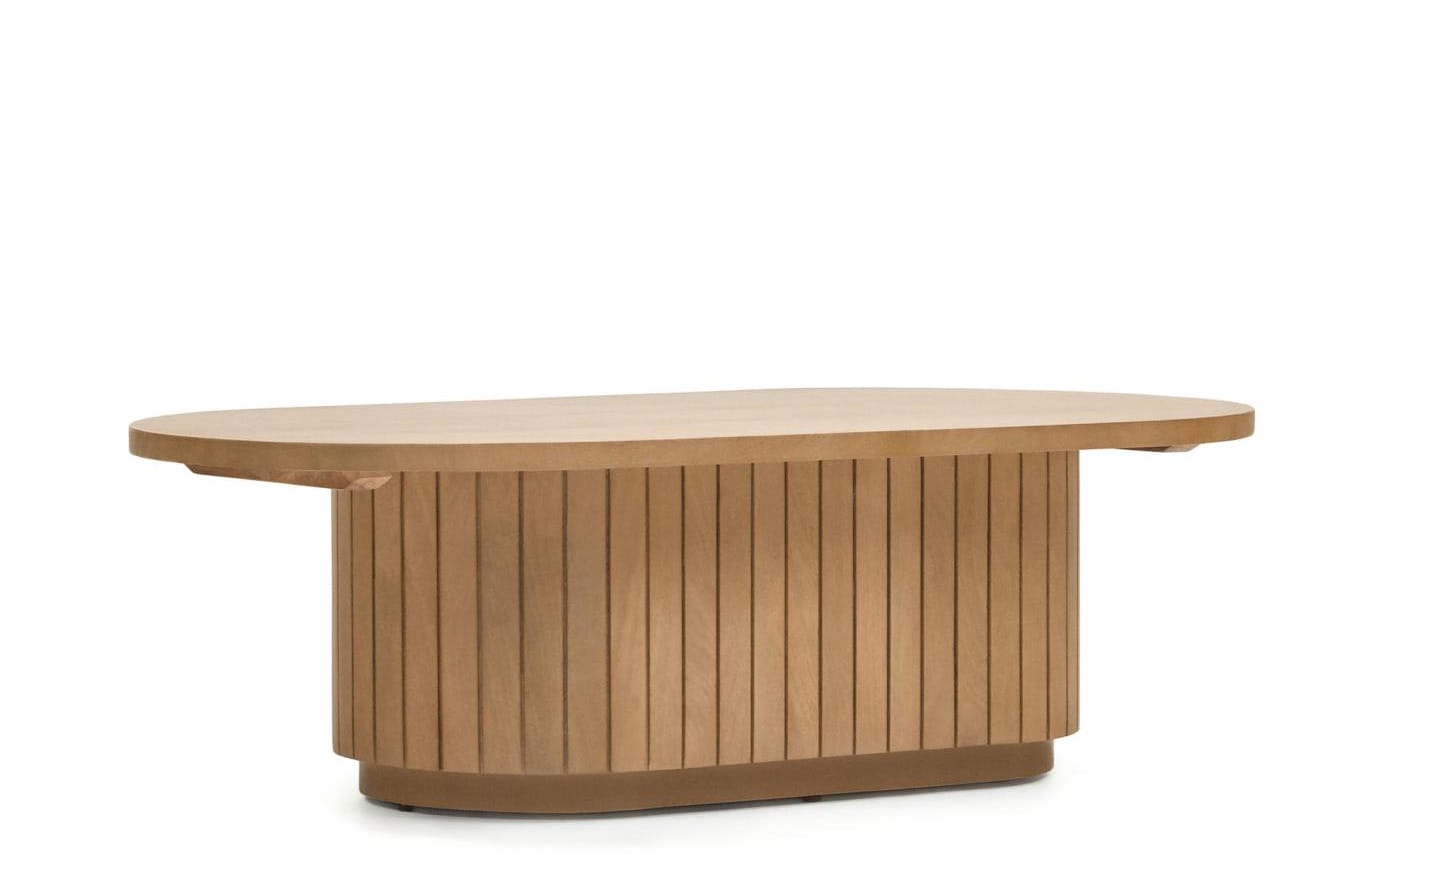 Mesa de Centro Licia, design artesanal em madeira maciça de mangueira, formas arredondadas únicas, dinamismo e elegância para interiores.